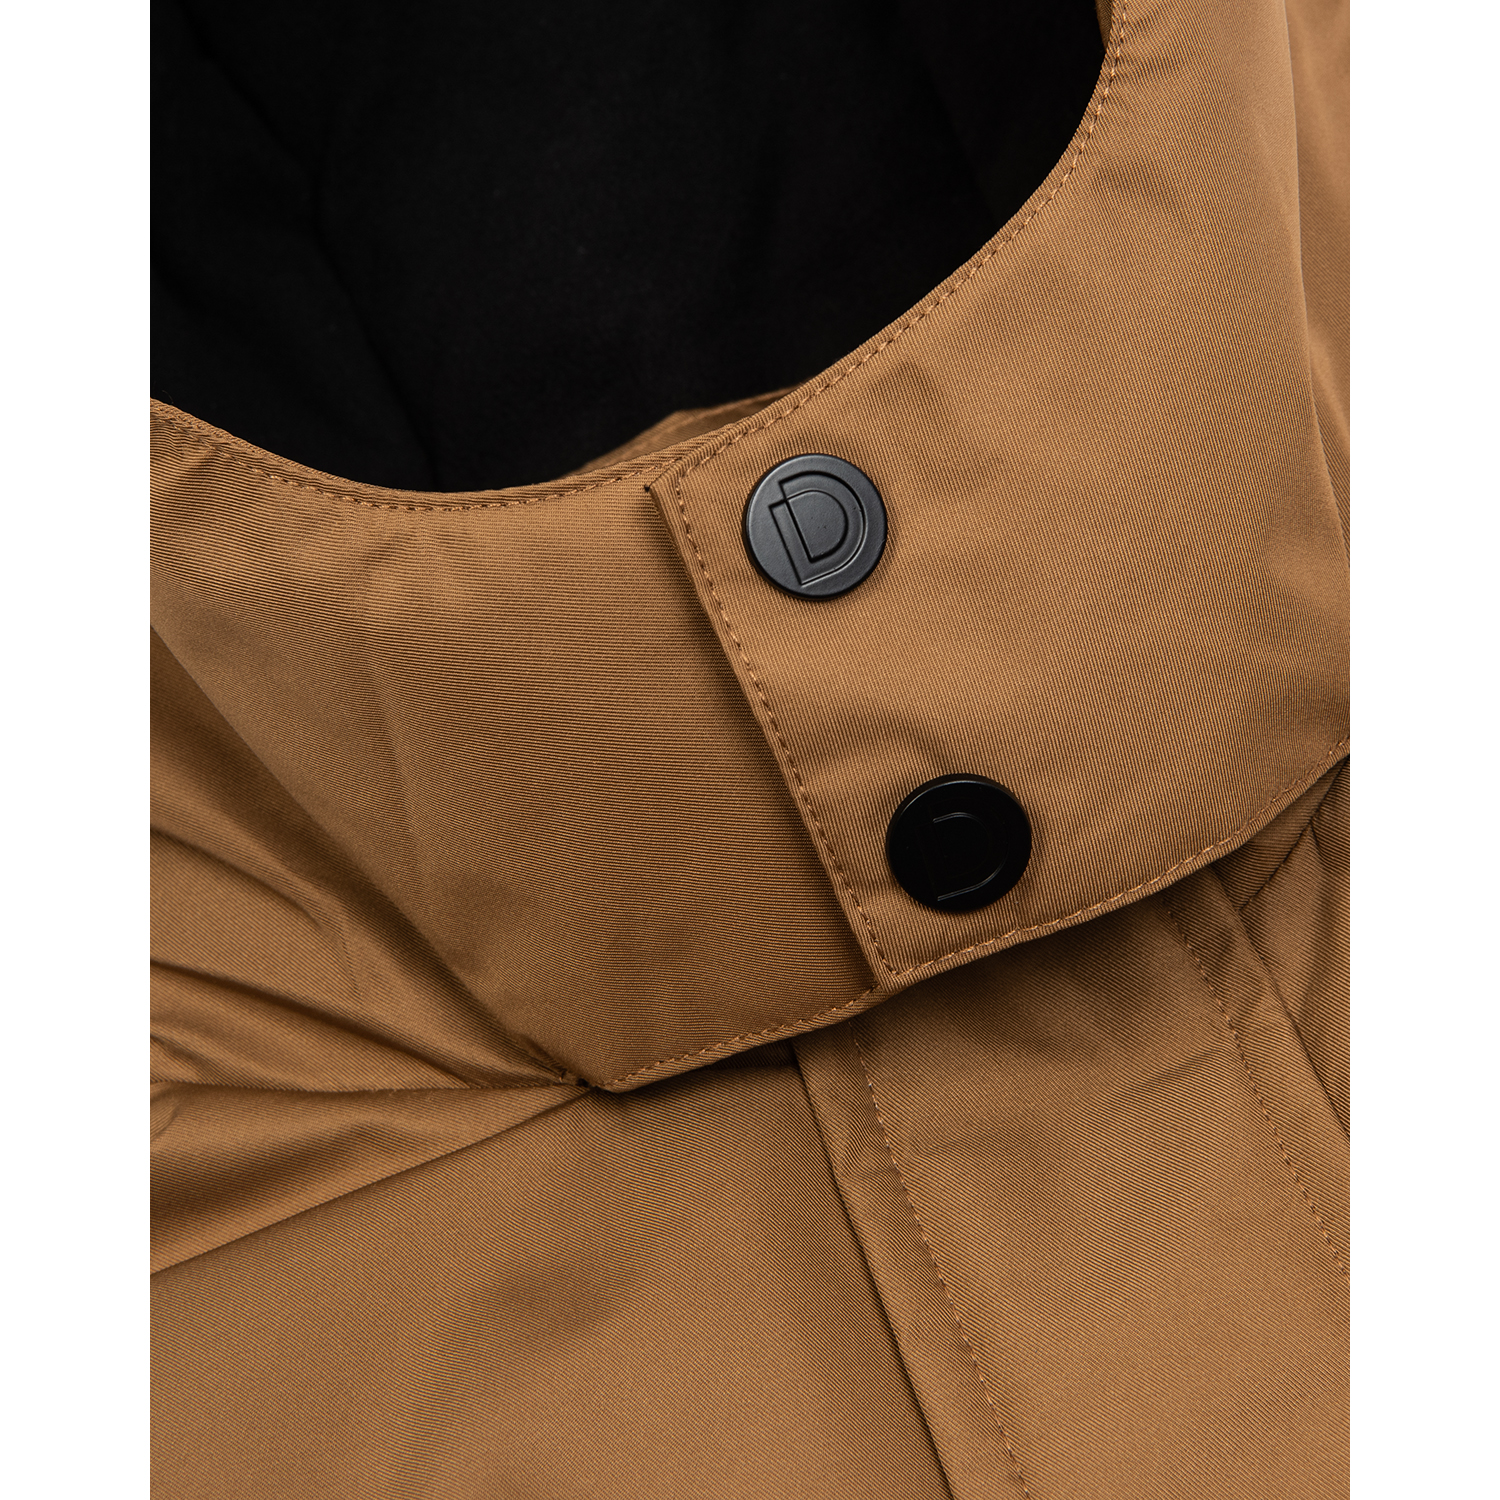 Куртка Futurino Cool SS22-E26FCtb-88 - фото 5